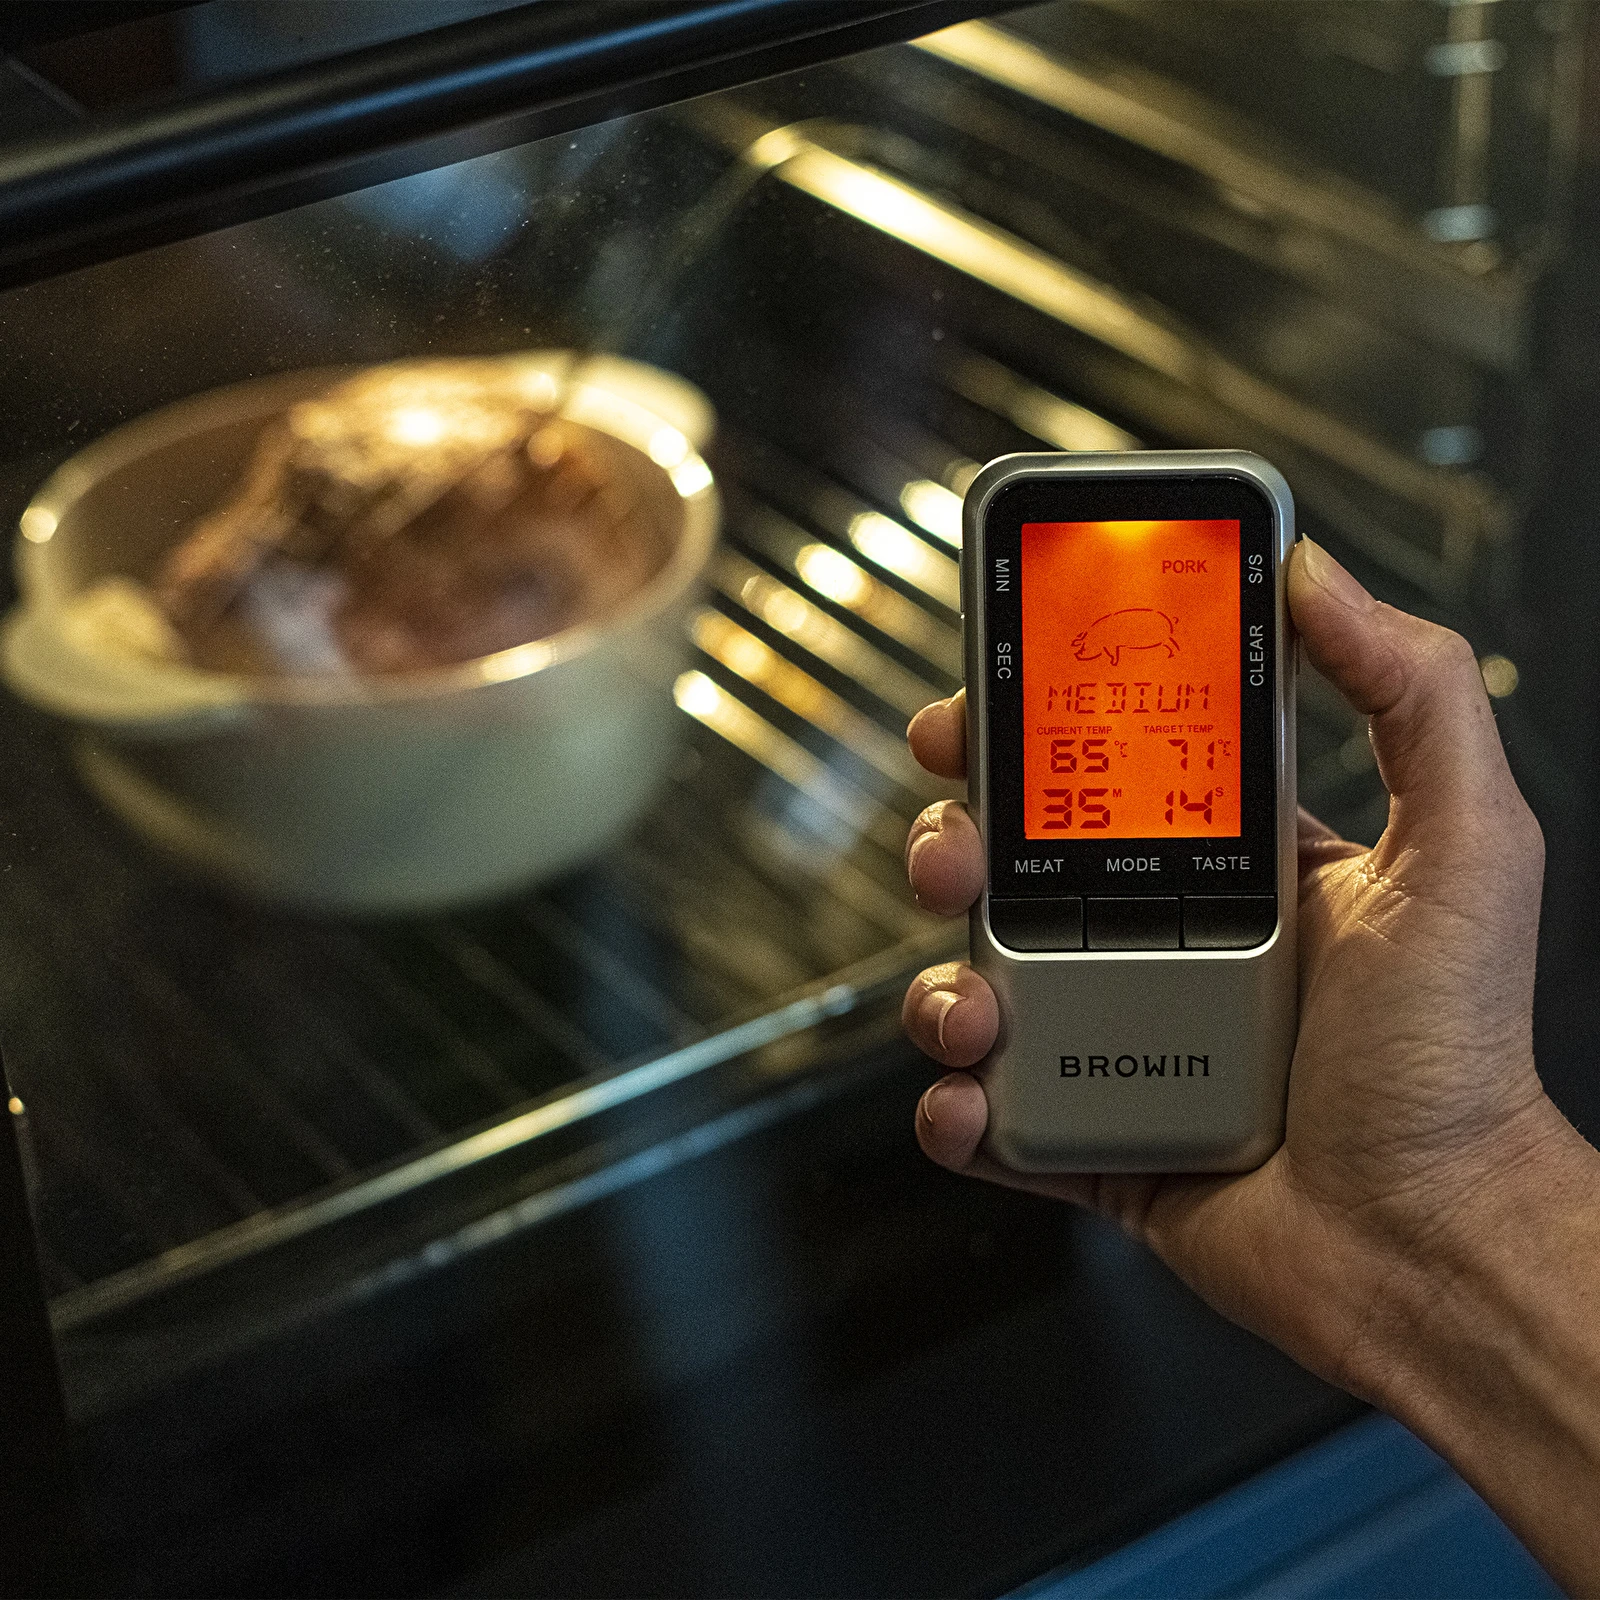 Digitales Lebensmittelthermometer mit Sonde (-20°C bis +300°C)  (küchenthermometer) - symbol:186009